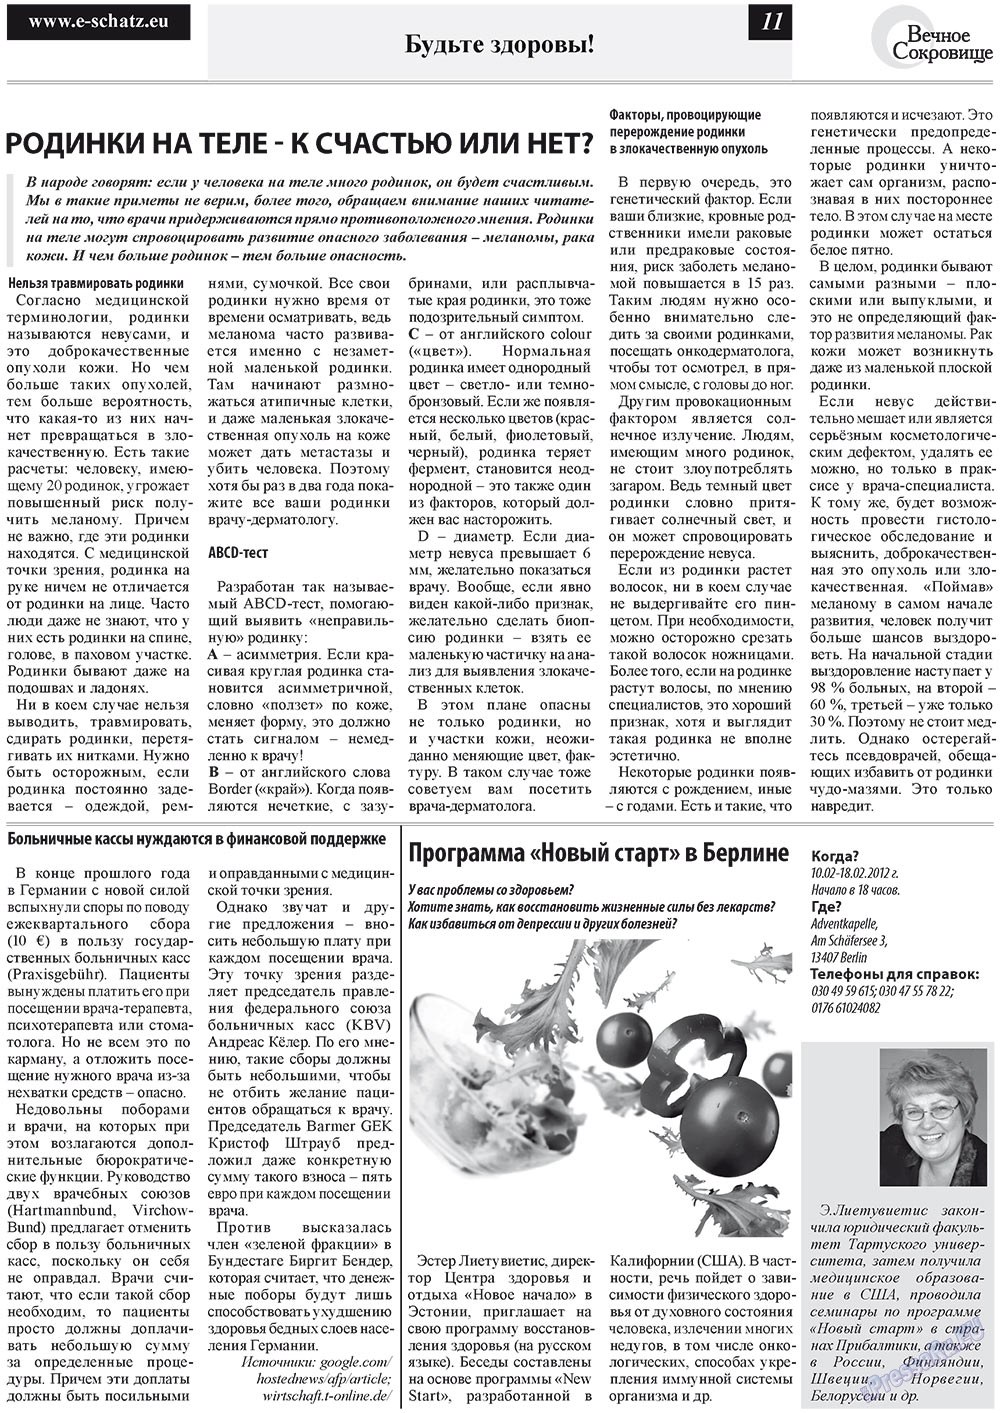 Вечное сокровище, газета. 2012 №1 стр.11